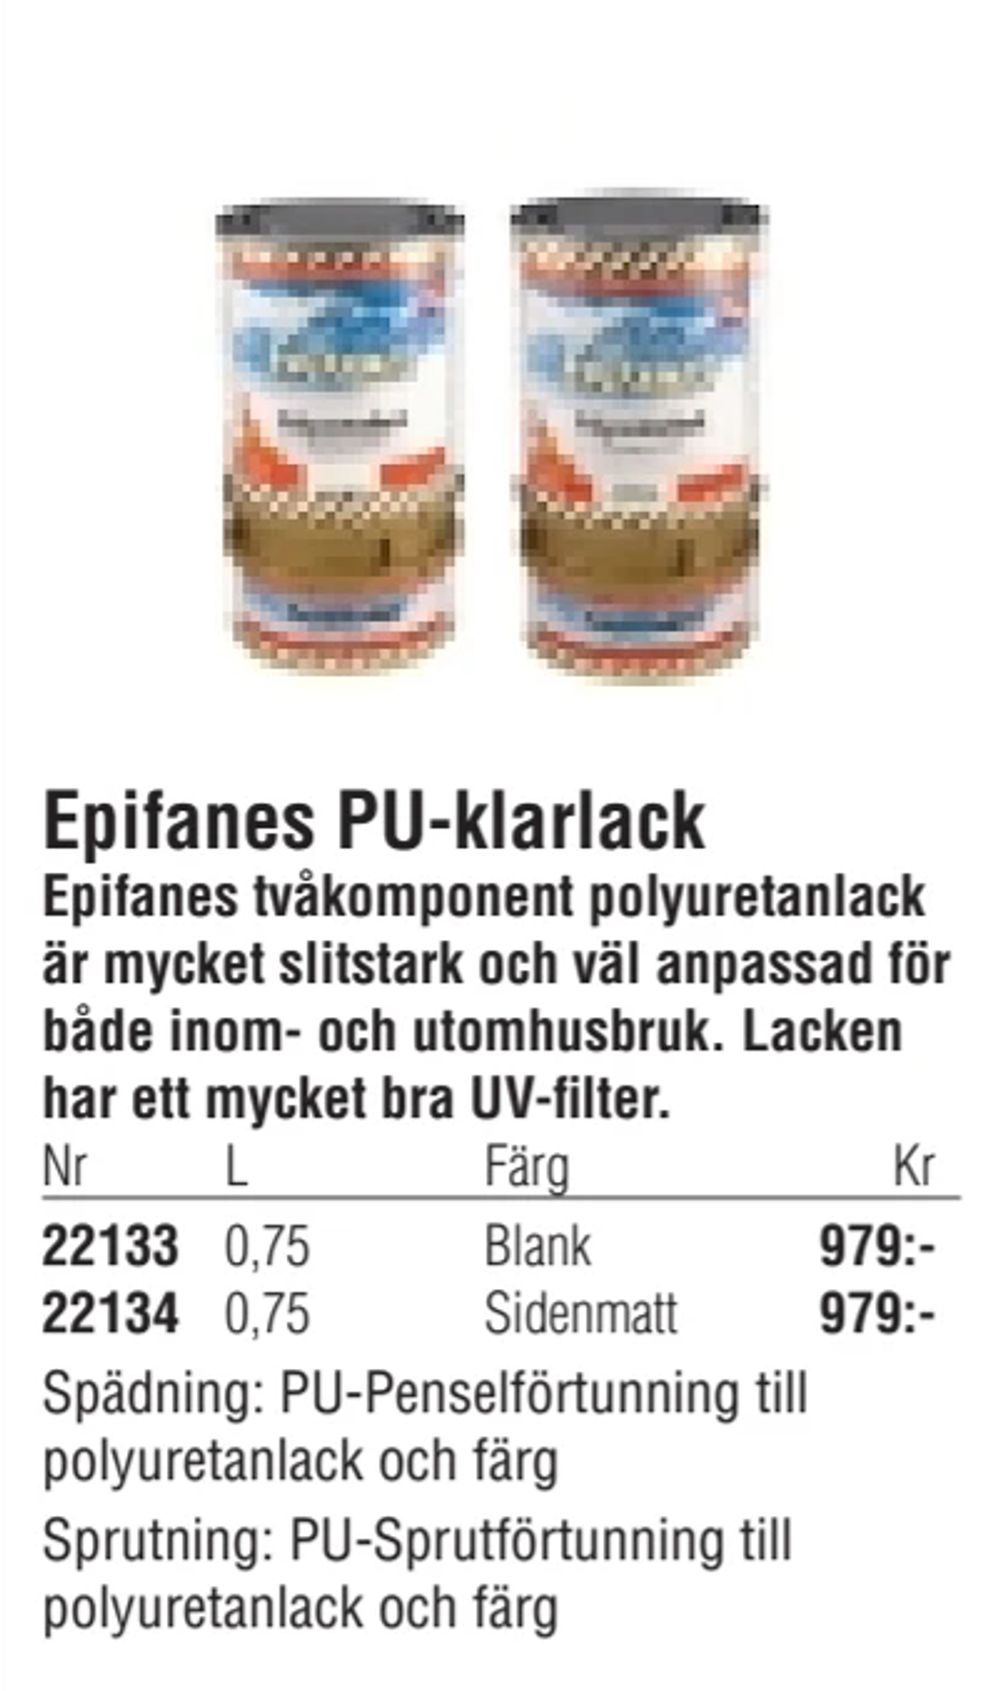 Erbjudanden på Epifanes PU-klarlack från Erlandsons Brygga för 979 kr